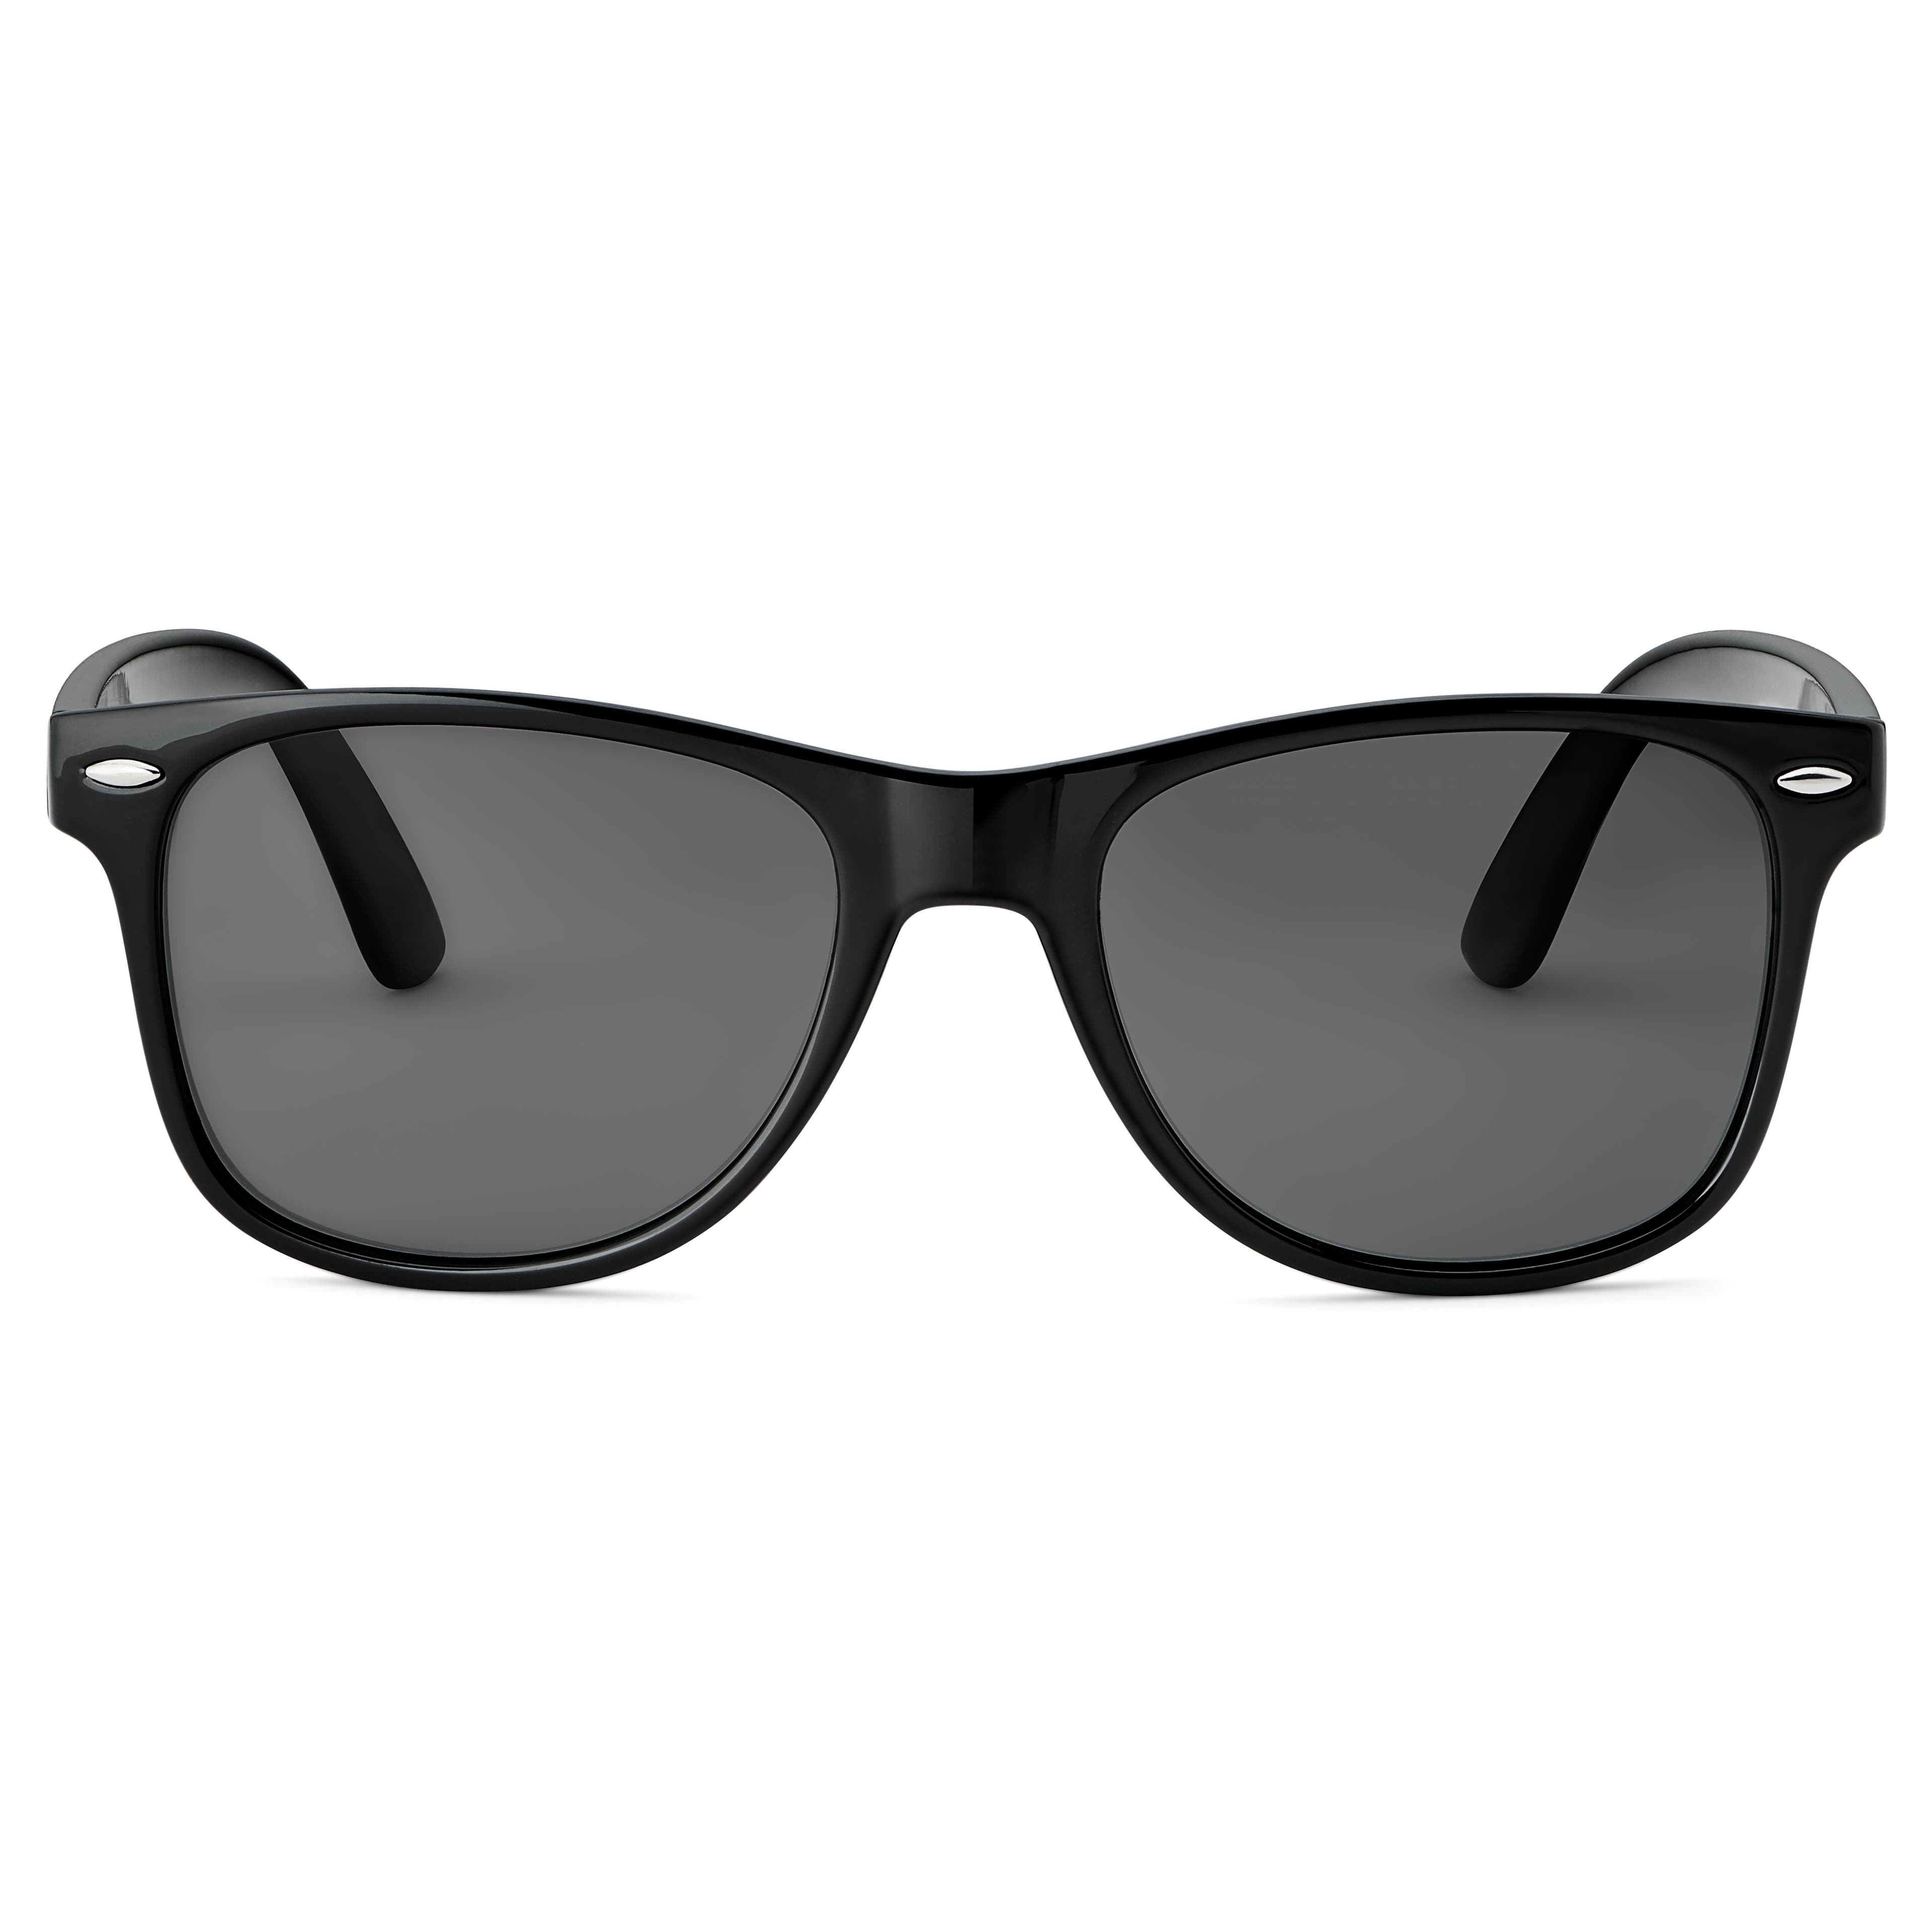 Black Polarised Retro Sunglasses